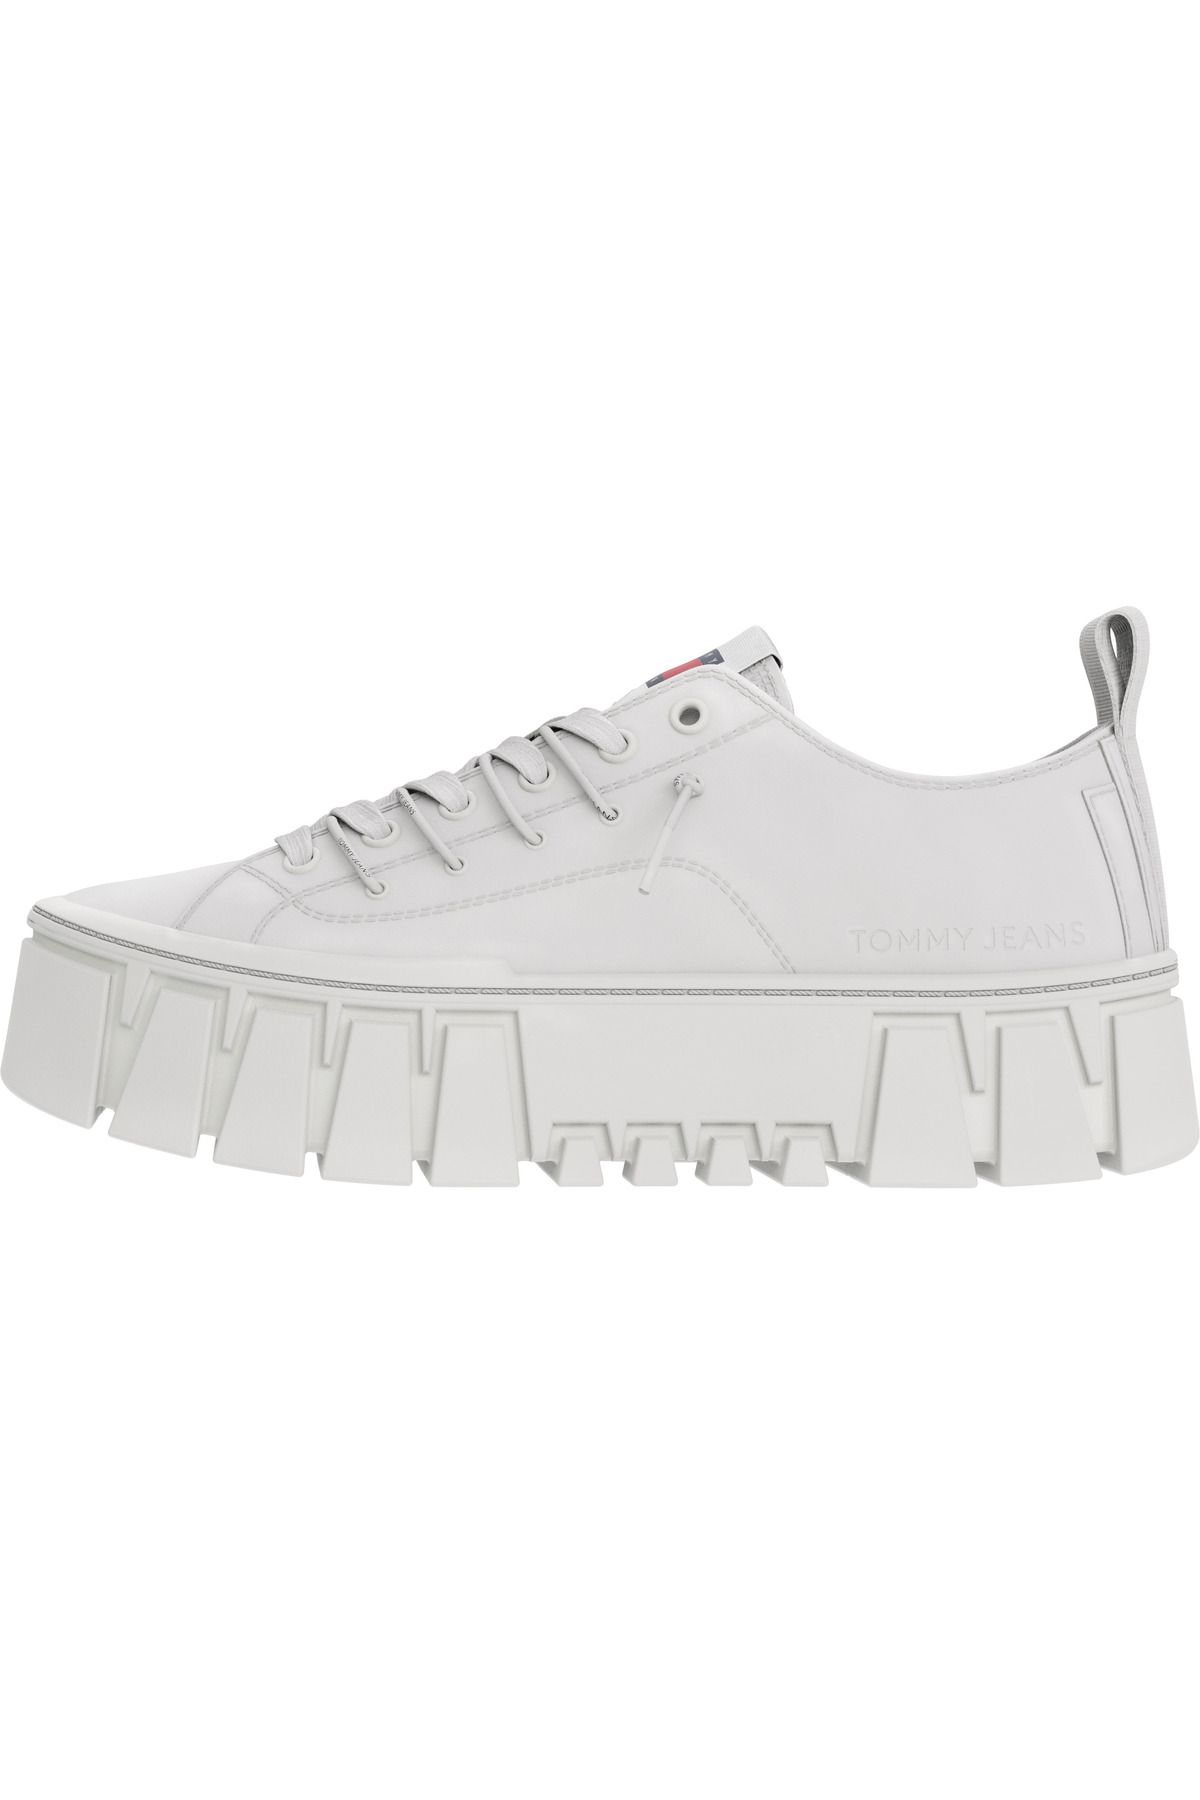 Tommy Hilfiger Kadın Marka Logolu Platform Topuklu Şık Görünüşlü Gündelik Kullanıma Uygun Beyaz Sneaker En0en02419-